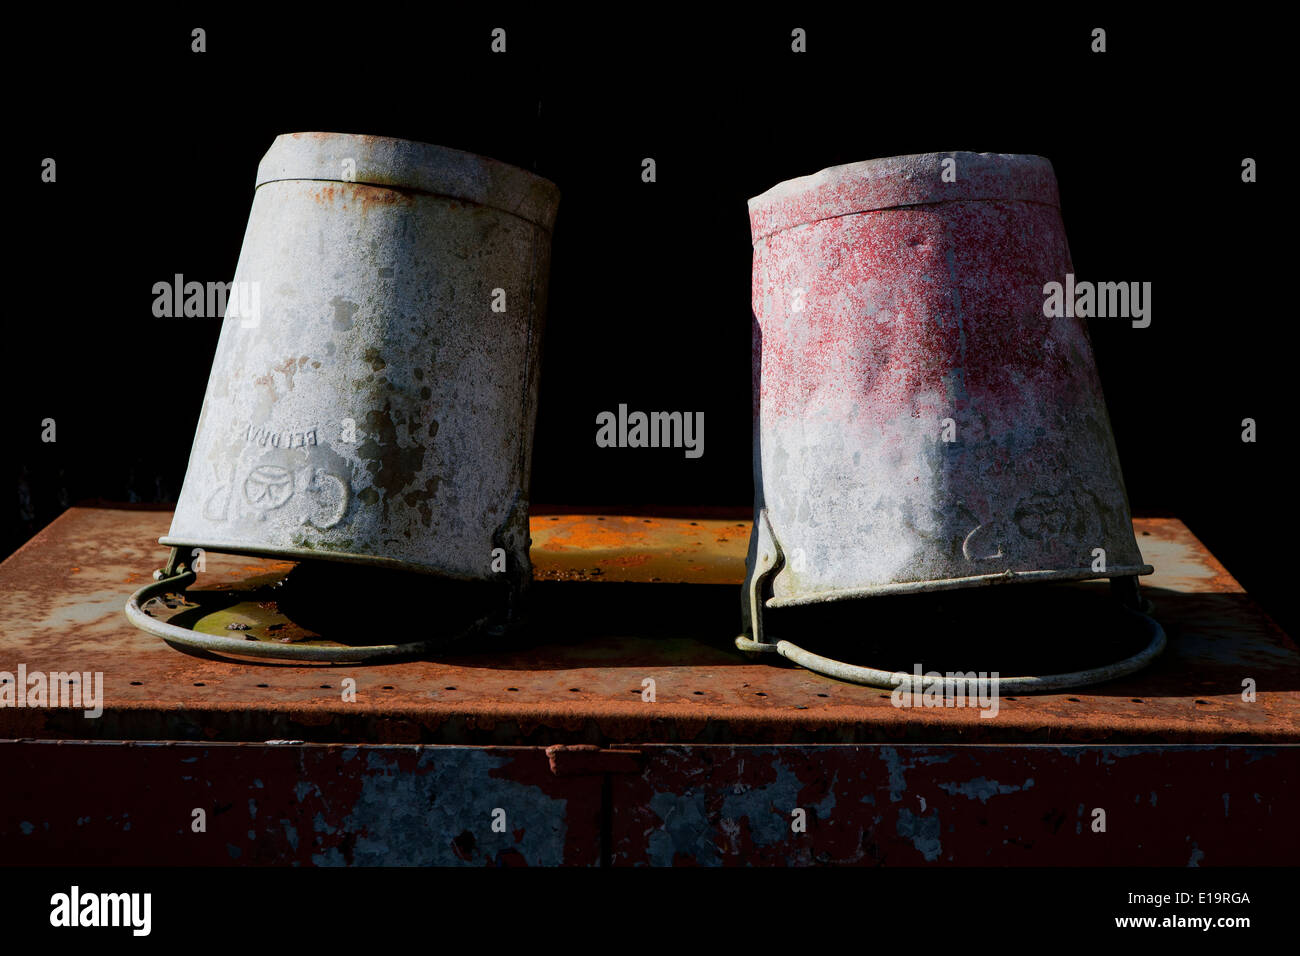 Zwei verzinkte Eimer mit verblassten Farben ruht auf dem Kopf stehend auf rostigen Metall. Stockfoto